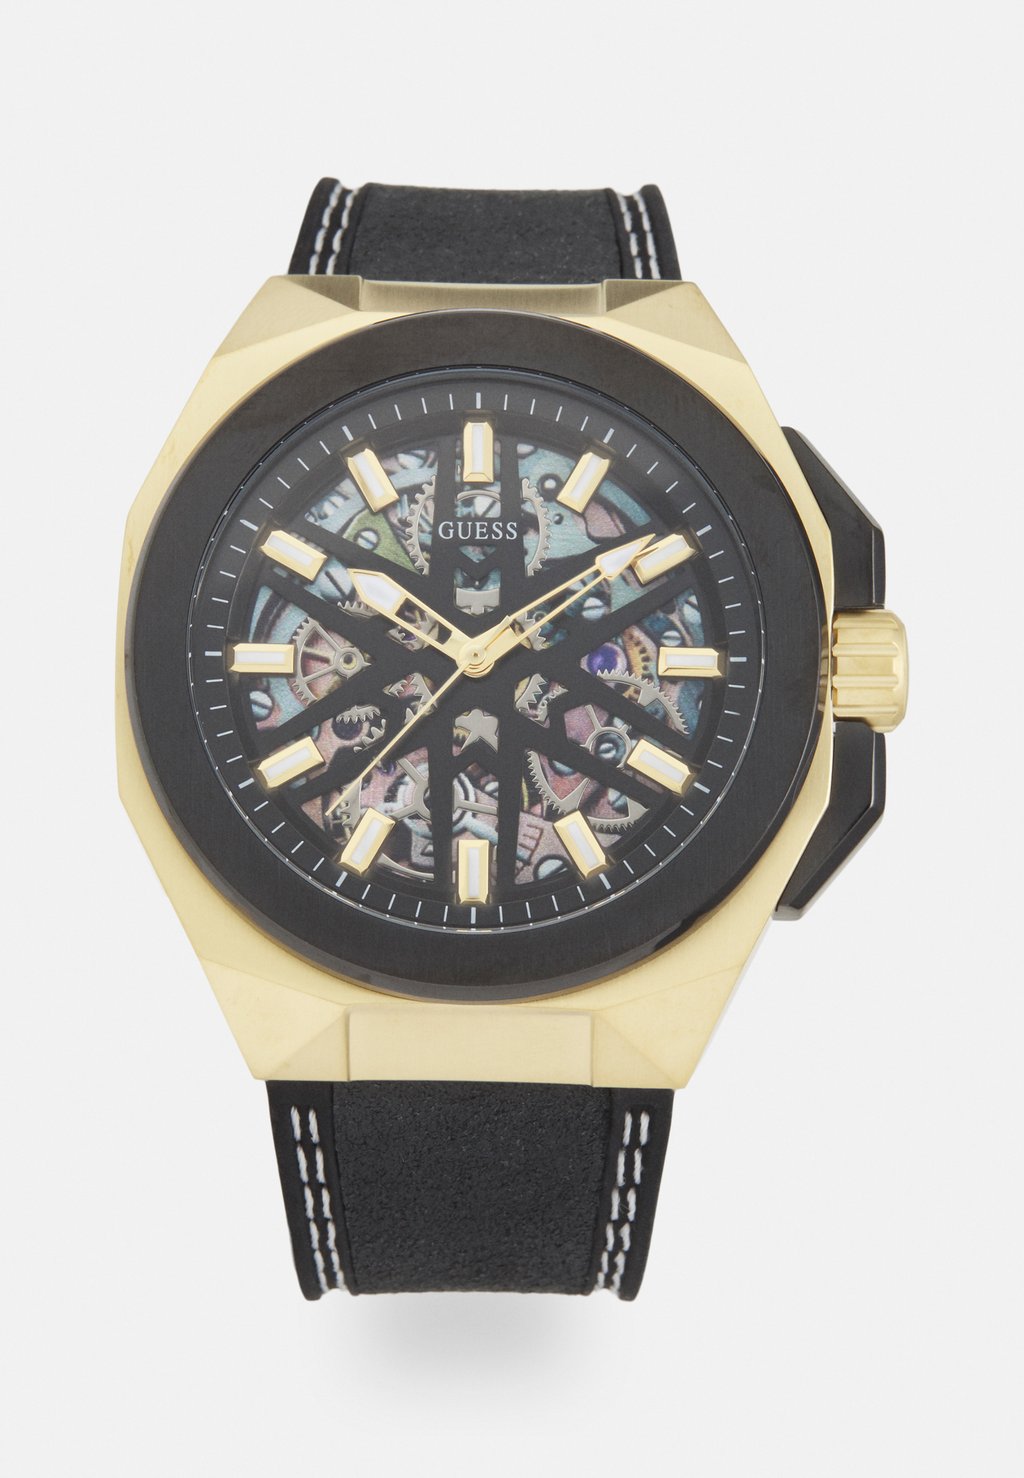 Часы Spoke Exclusive Guess, цвет gold-coloured/black часы prodigy exclusive guess цвет silver coloured black